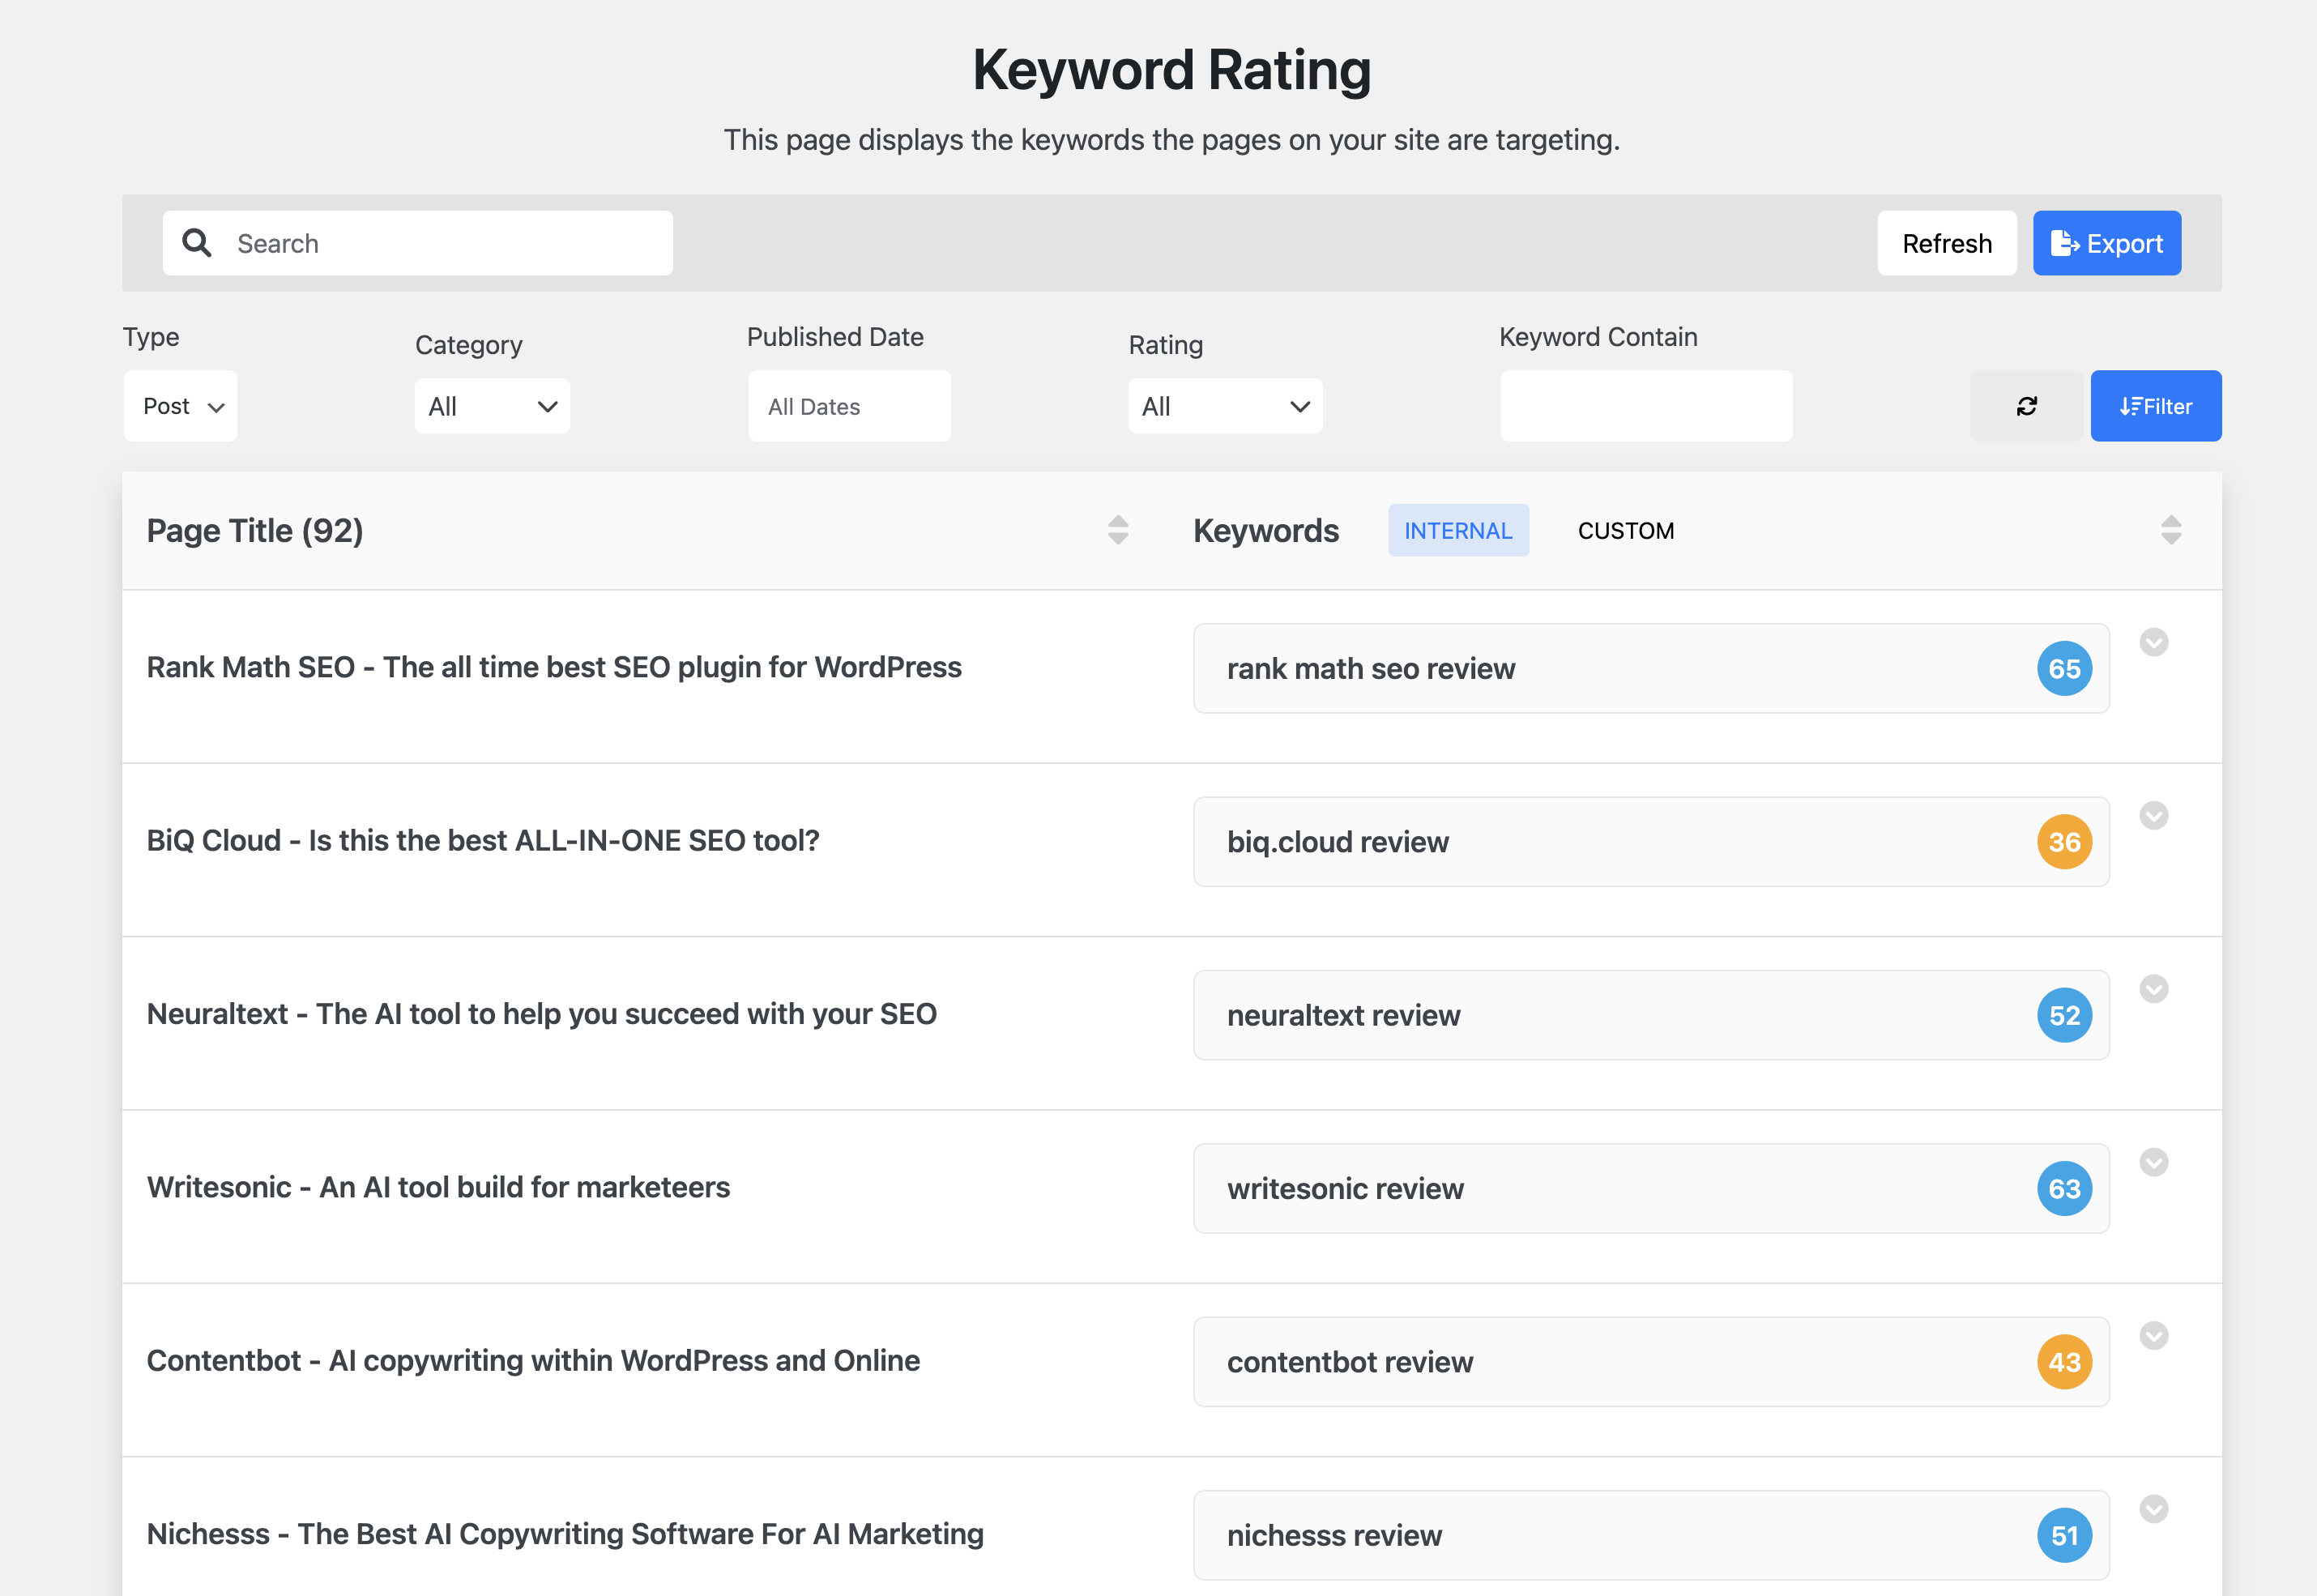 Keywords Rating - Find The Best Keyword For Your Blog Post